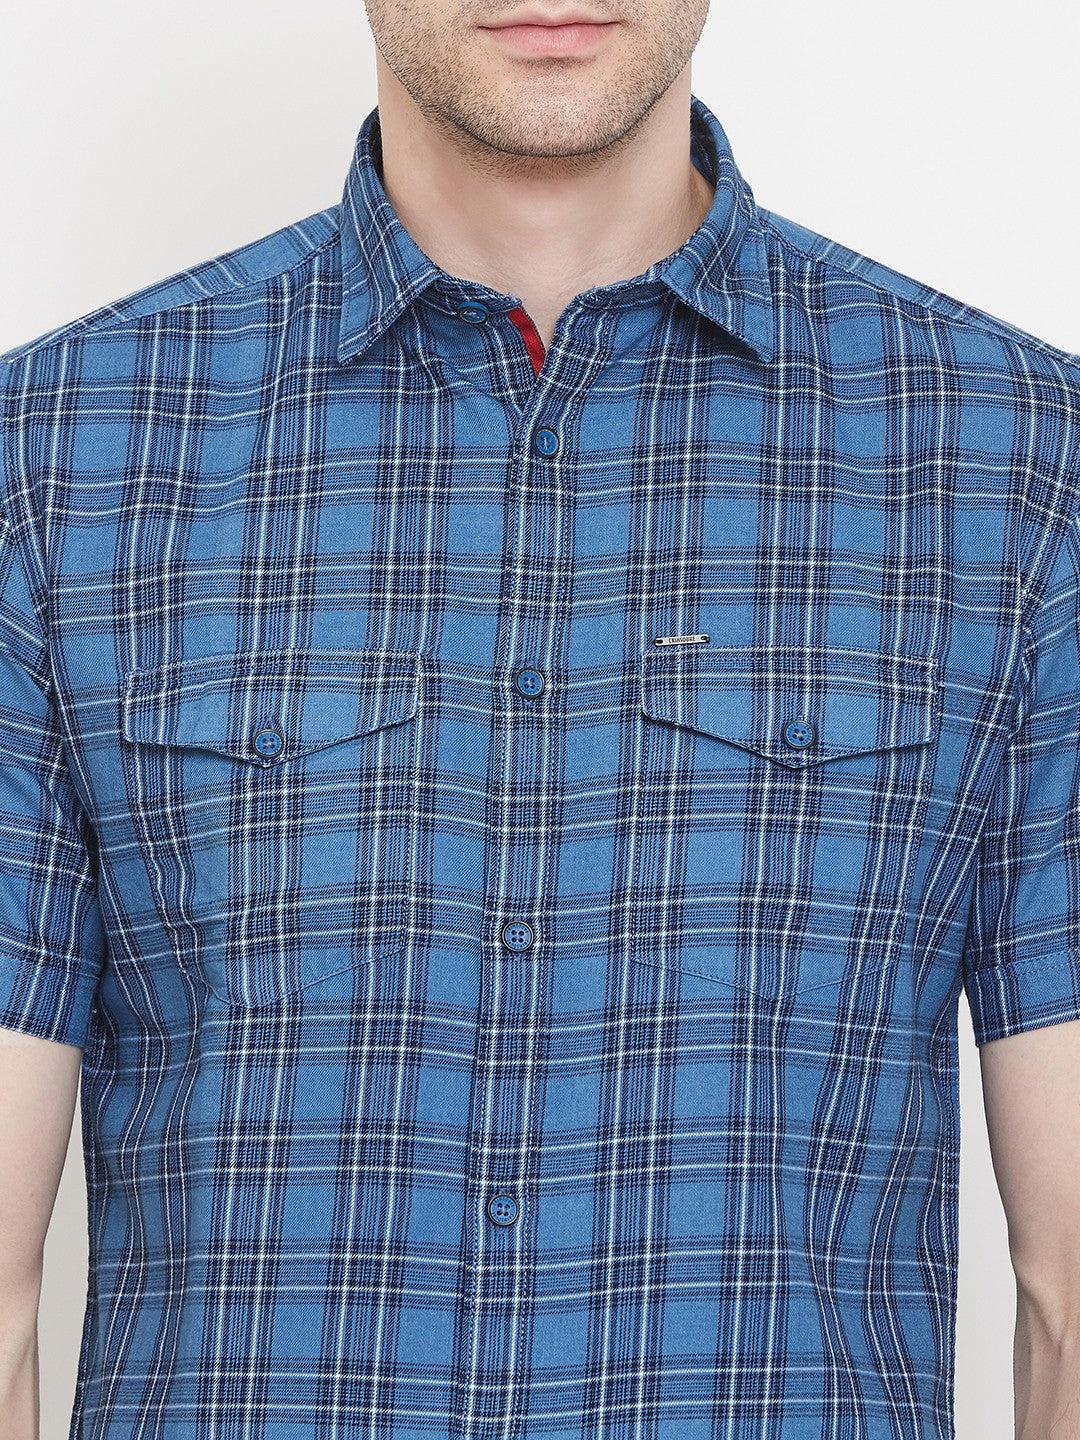 Blue Checked shirt - Men Shirts